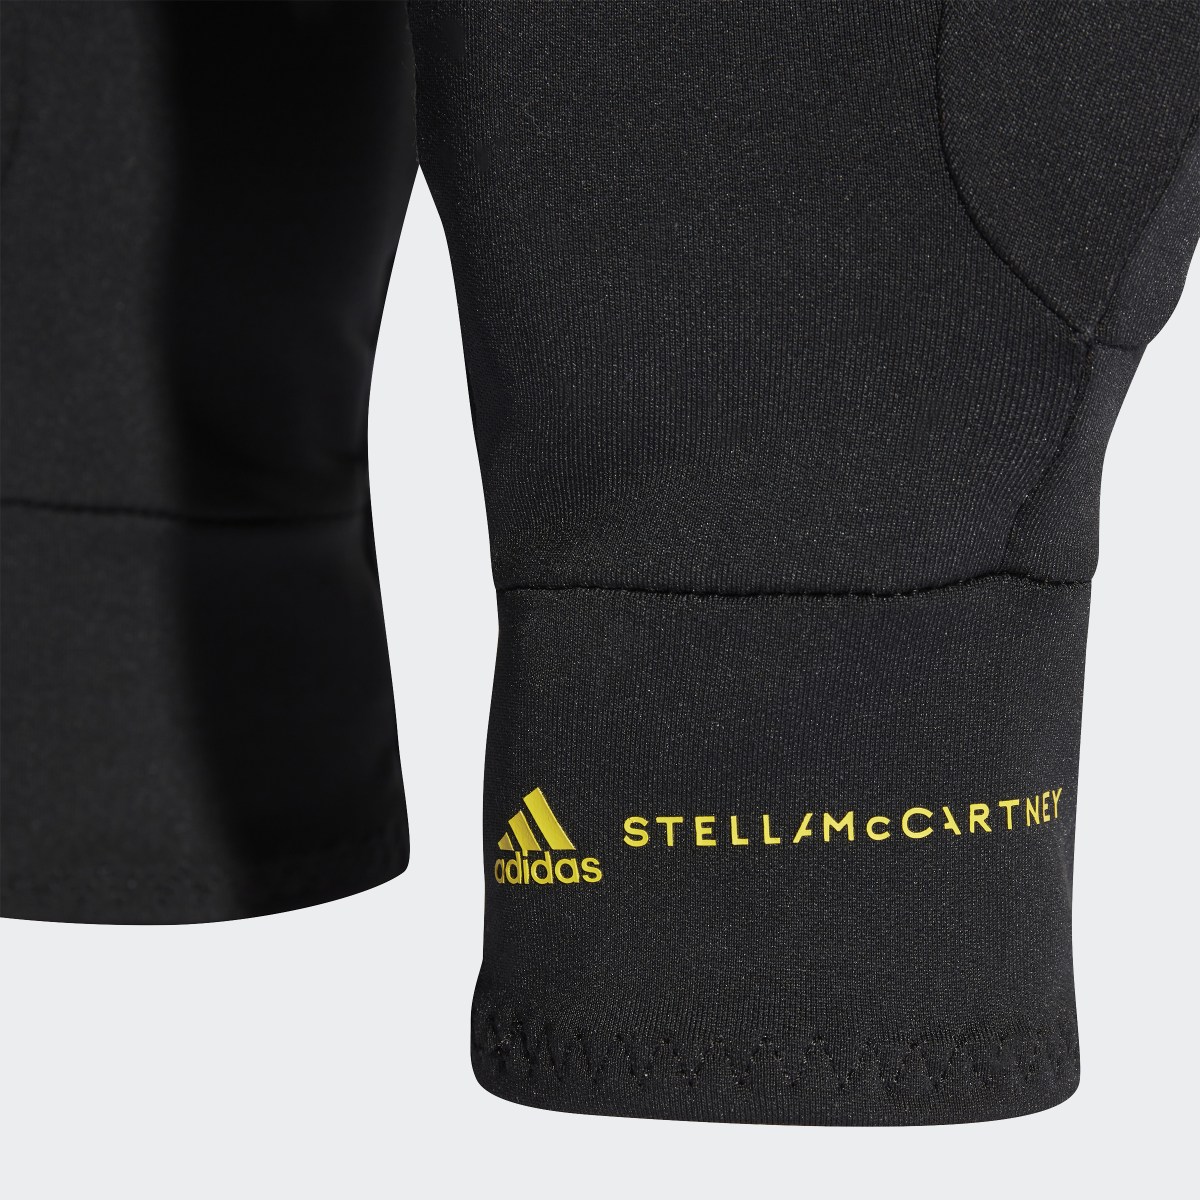 Adidas by Stella McCartney Gloves. 4